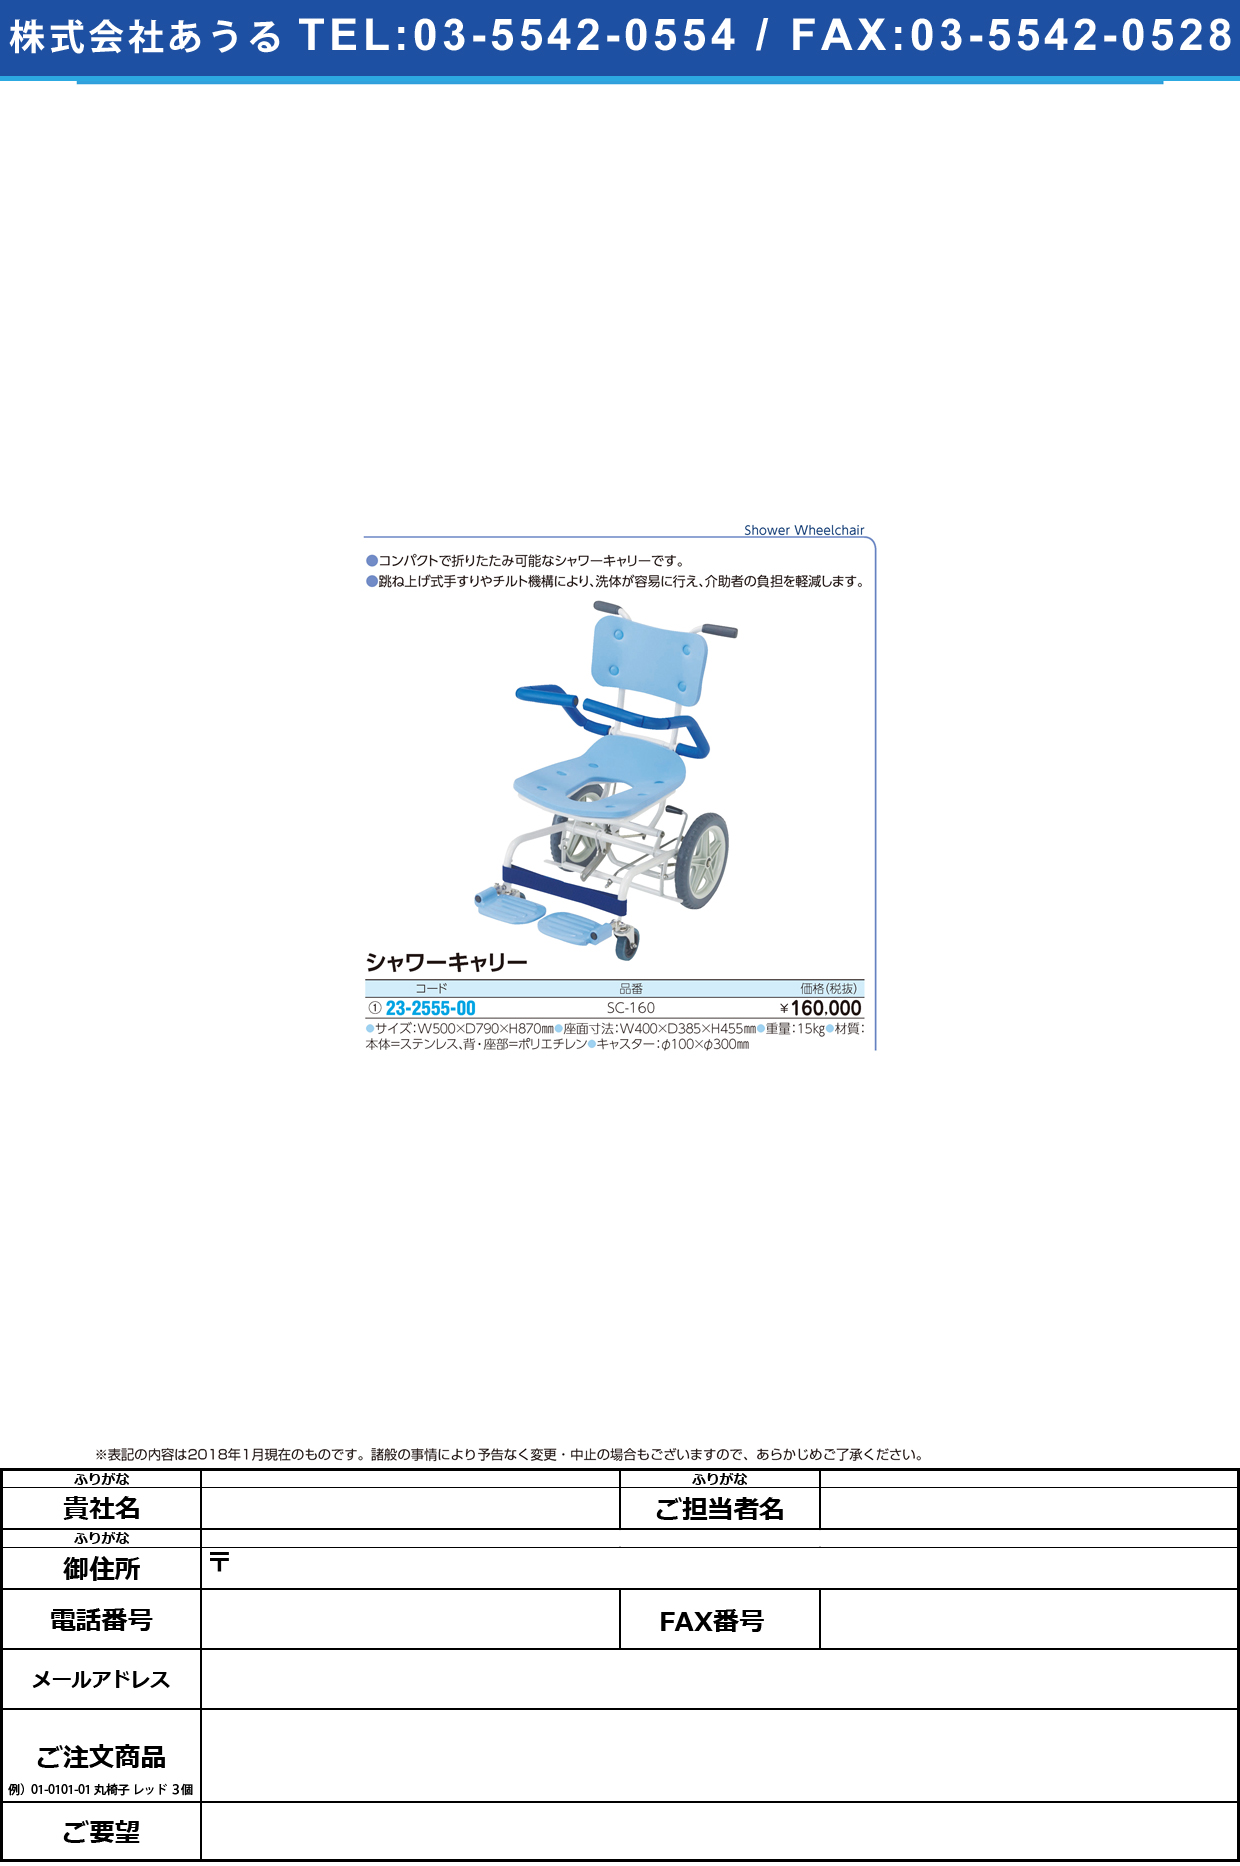 (23-2555-00)シャワーキャリー SC-160 ｼｬﾜｰｷｬﾘｰ(いうら)【1台単位】【2018年カタログ商品】